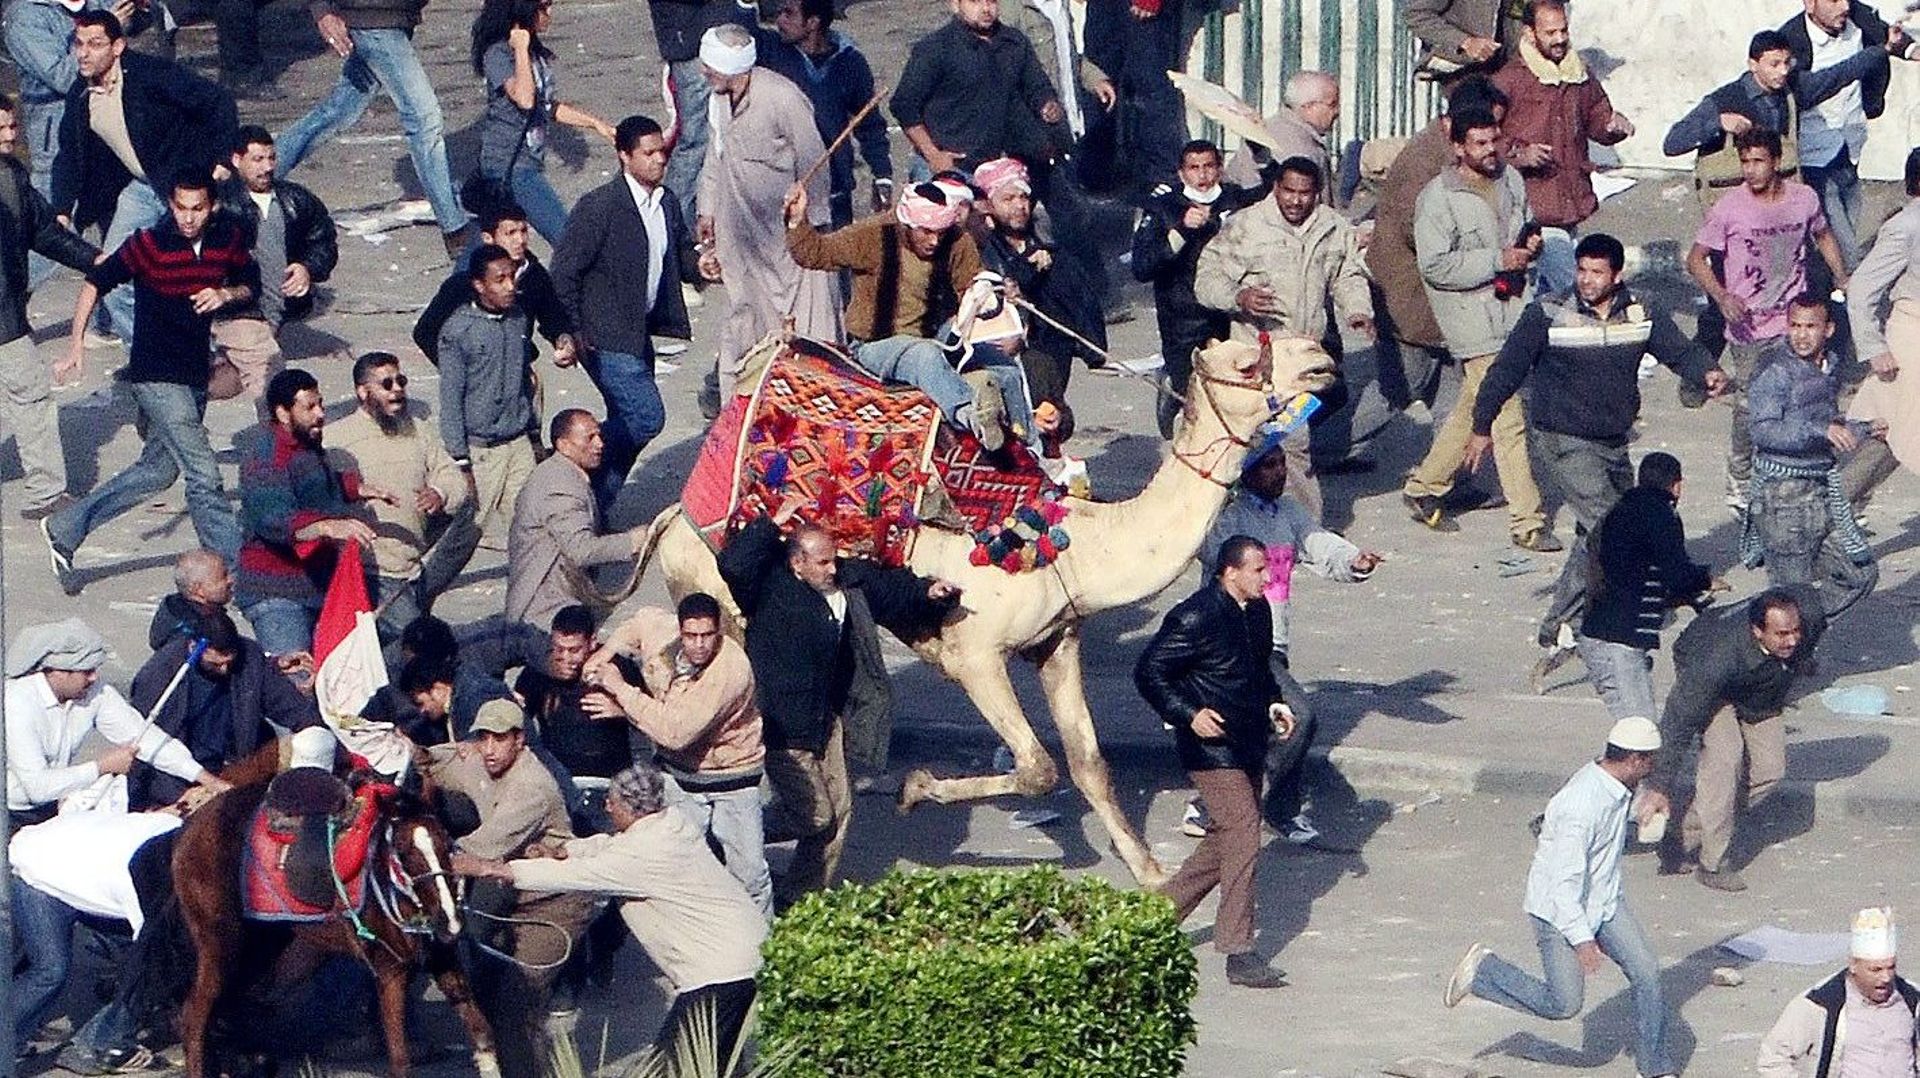 Le 2 février 2011, une attaque contre les manifestants de la place Tahrir est menée entre autres à dos de chameaux.